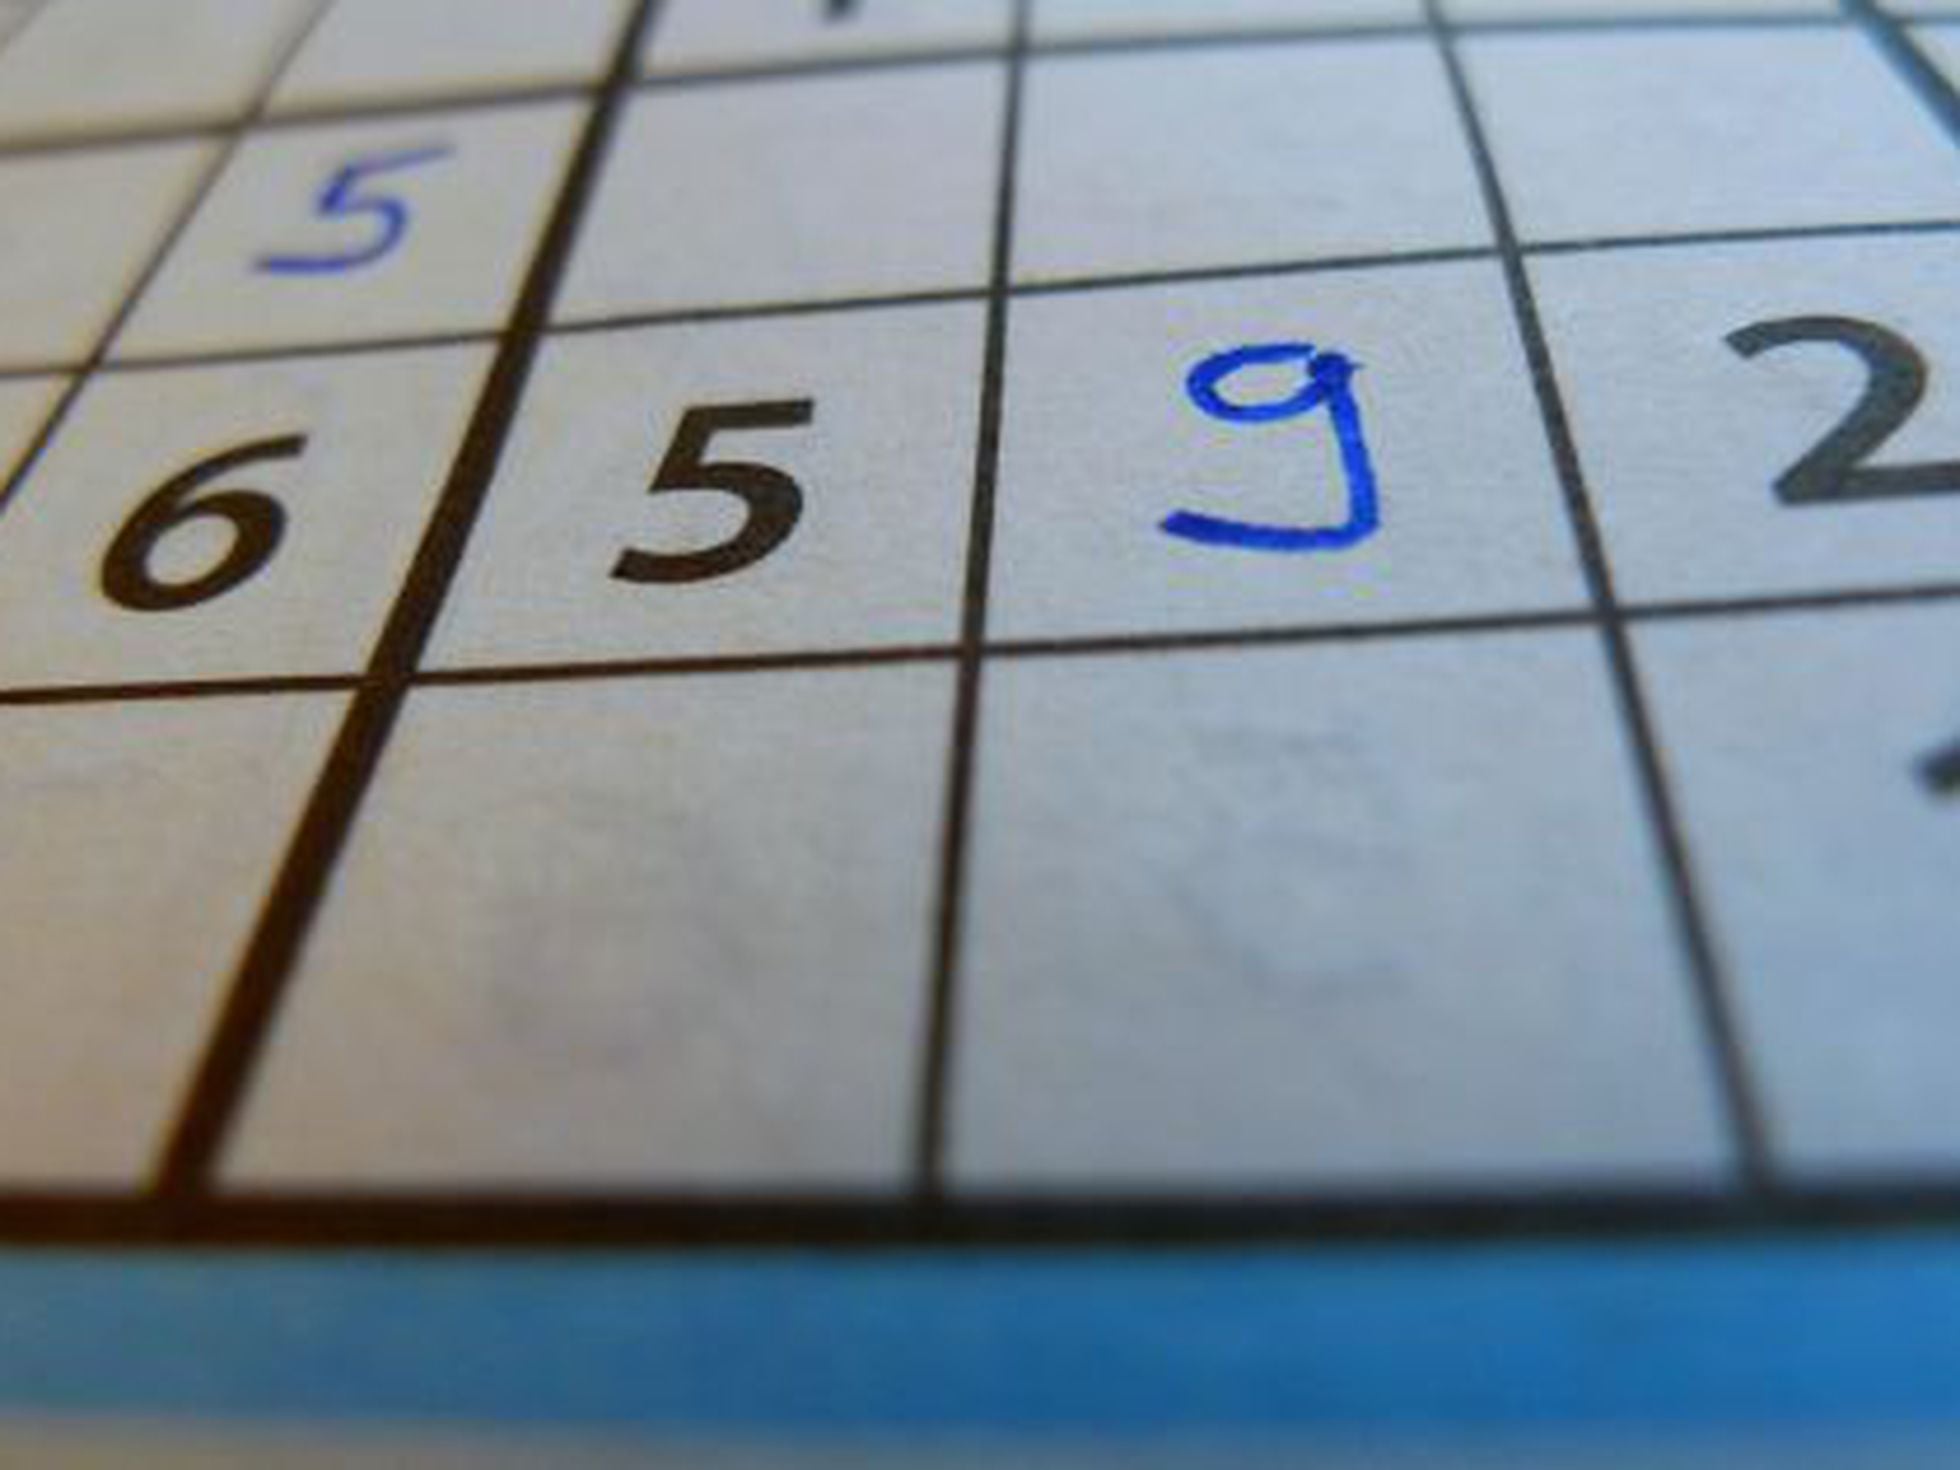 O que é Sudoku? – Sudoku Brasil